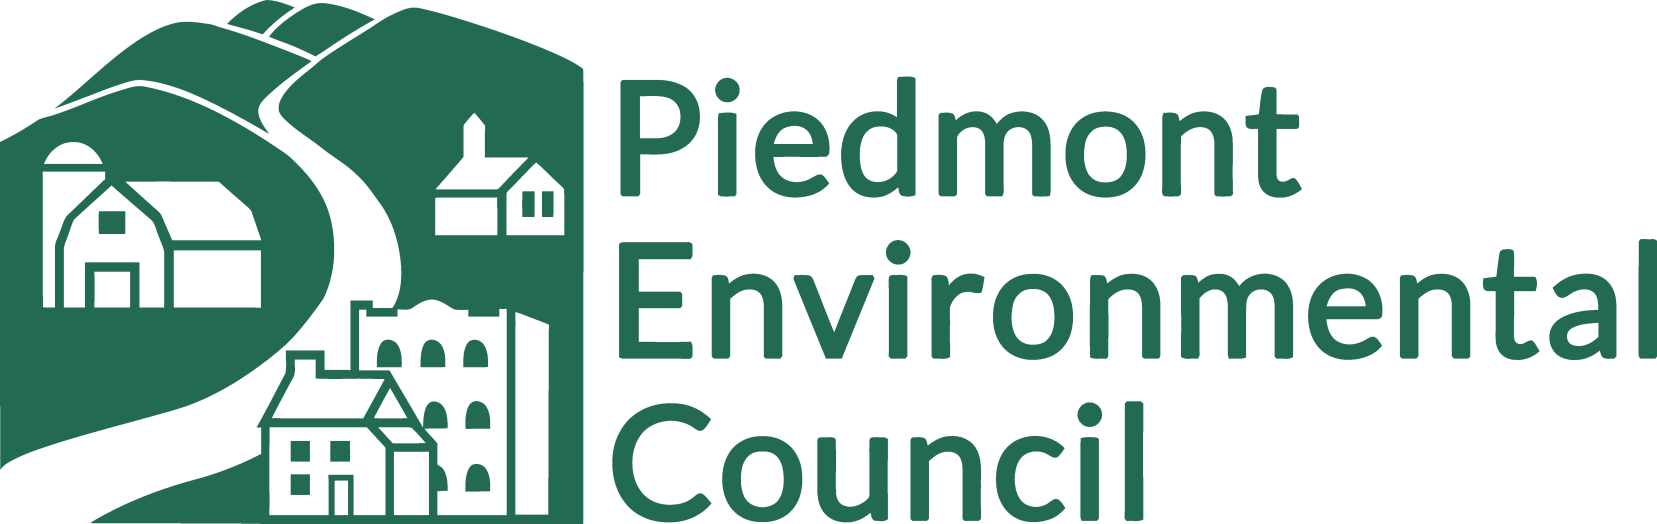 The Piedmont Environmental Council